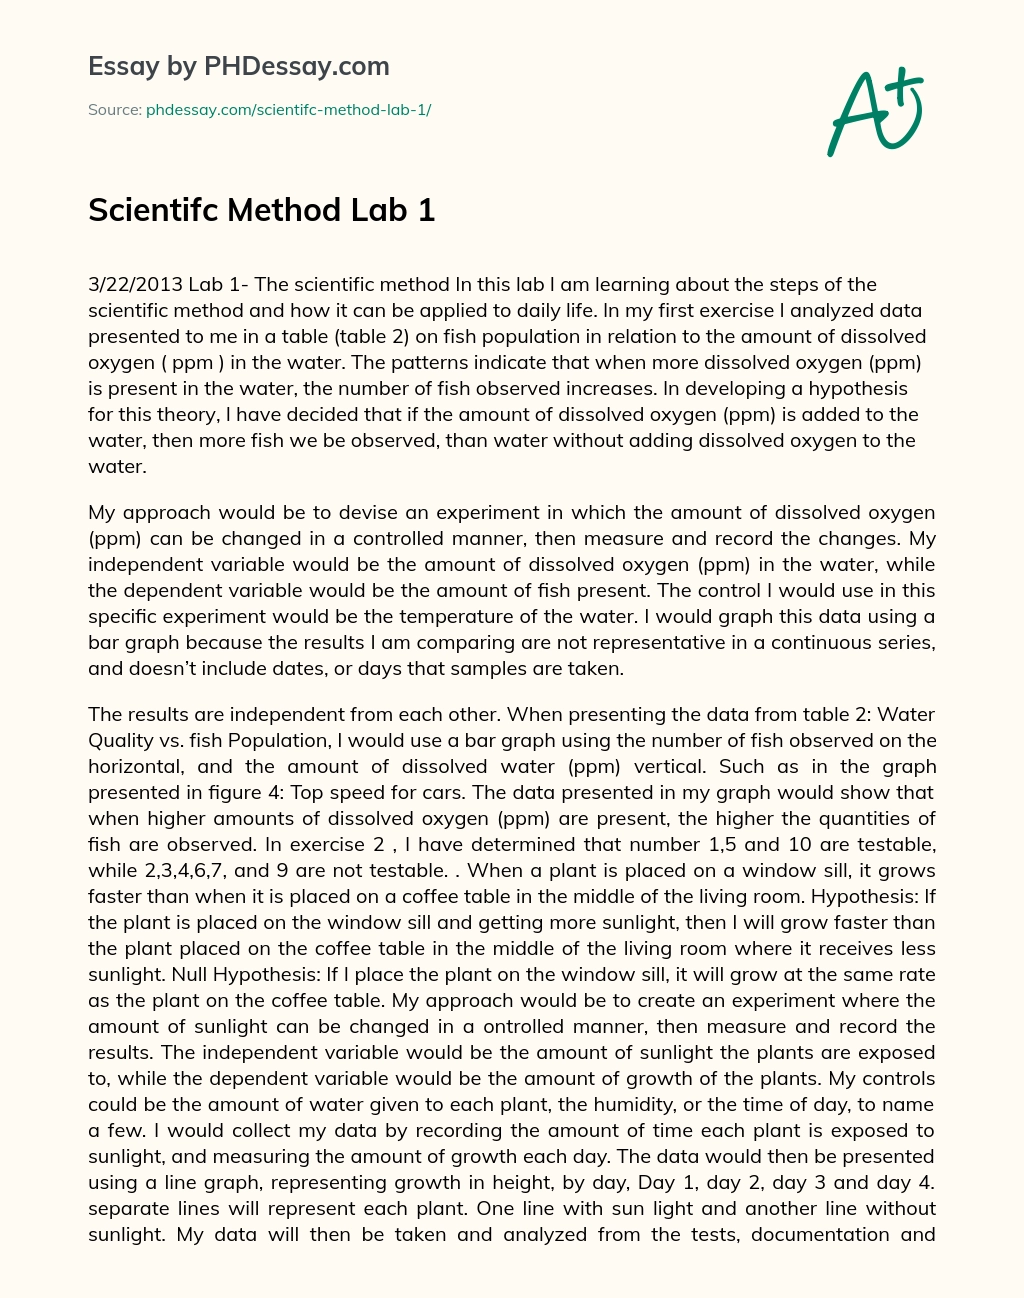 Scientifc Method Lab 1 essay